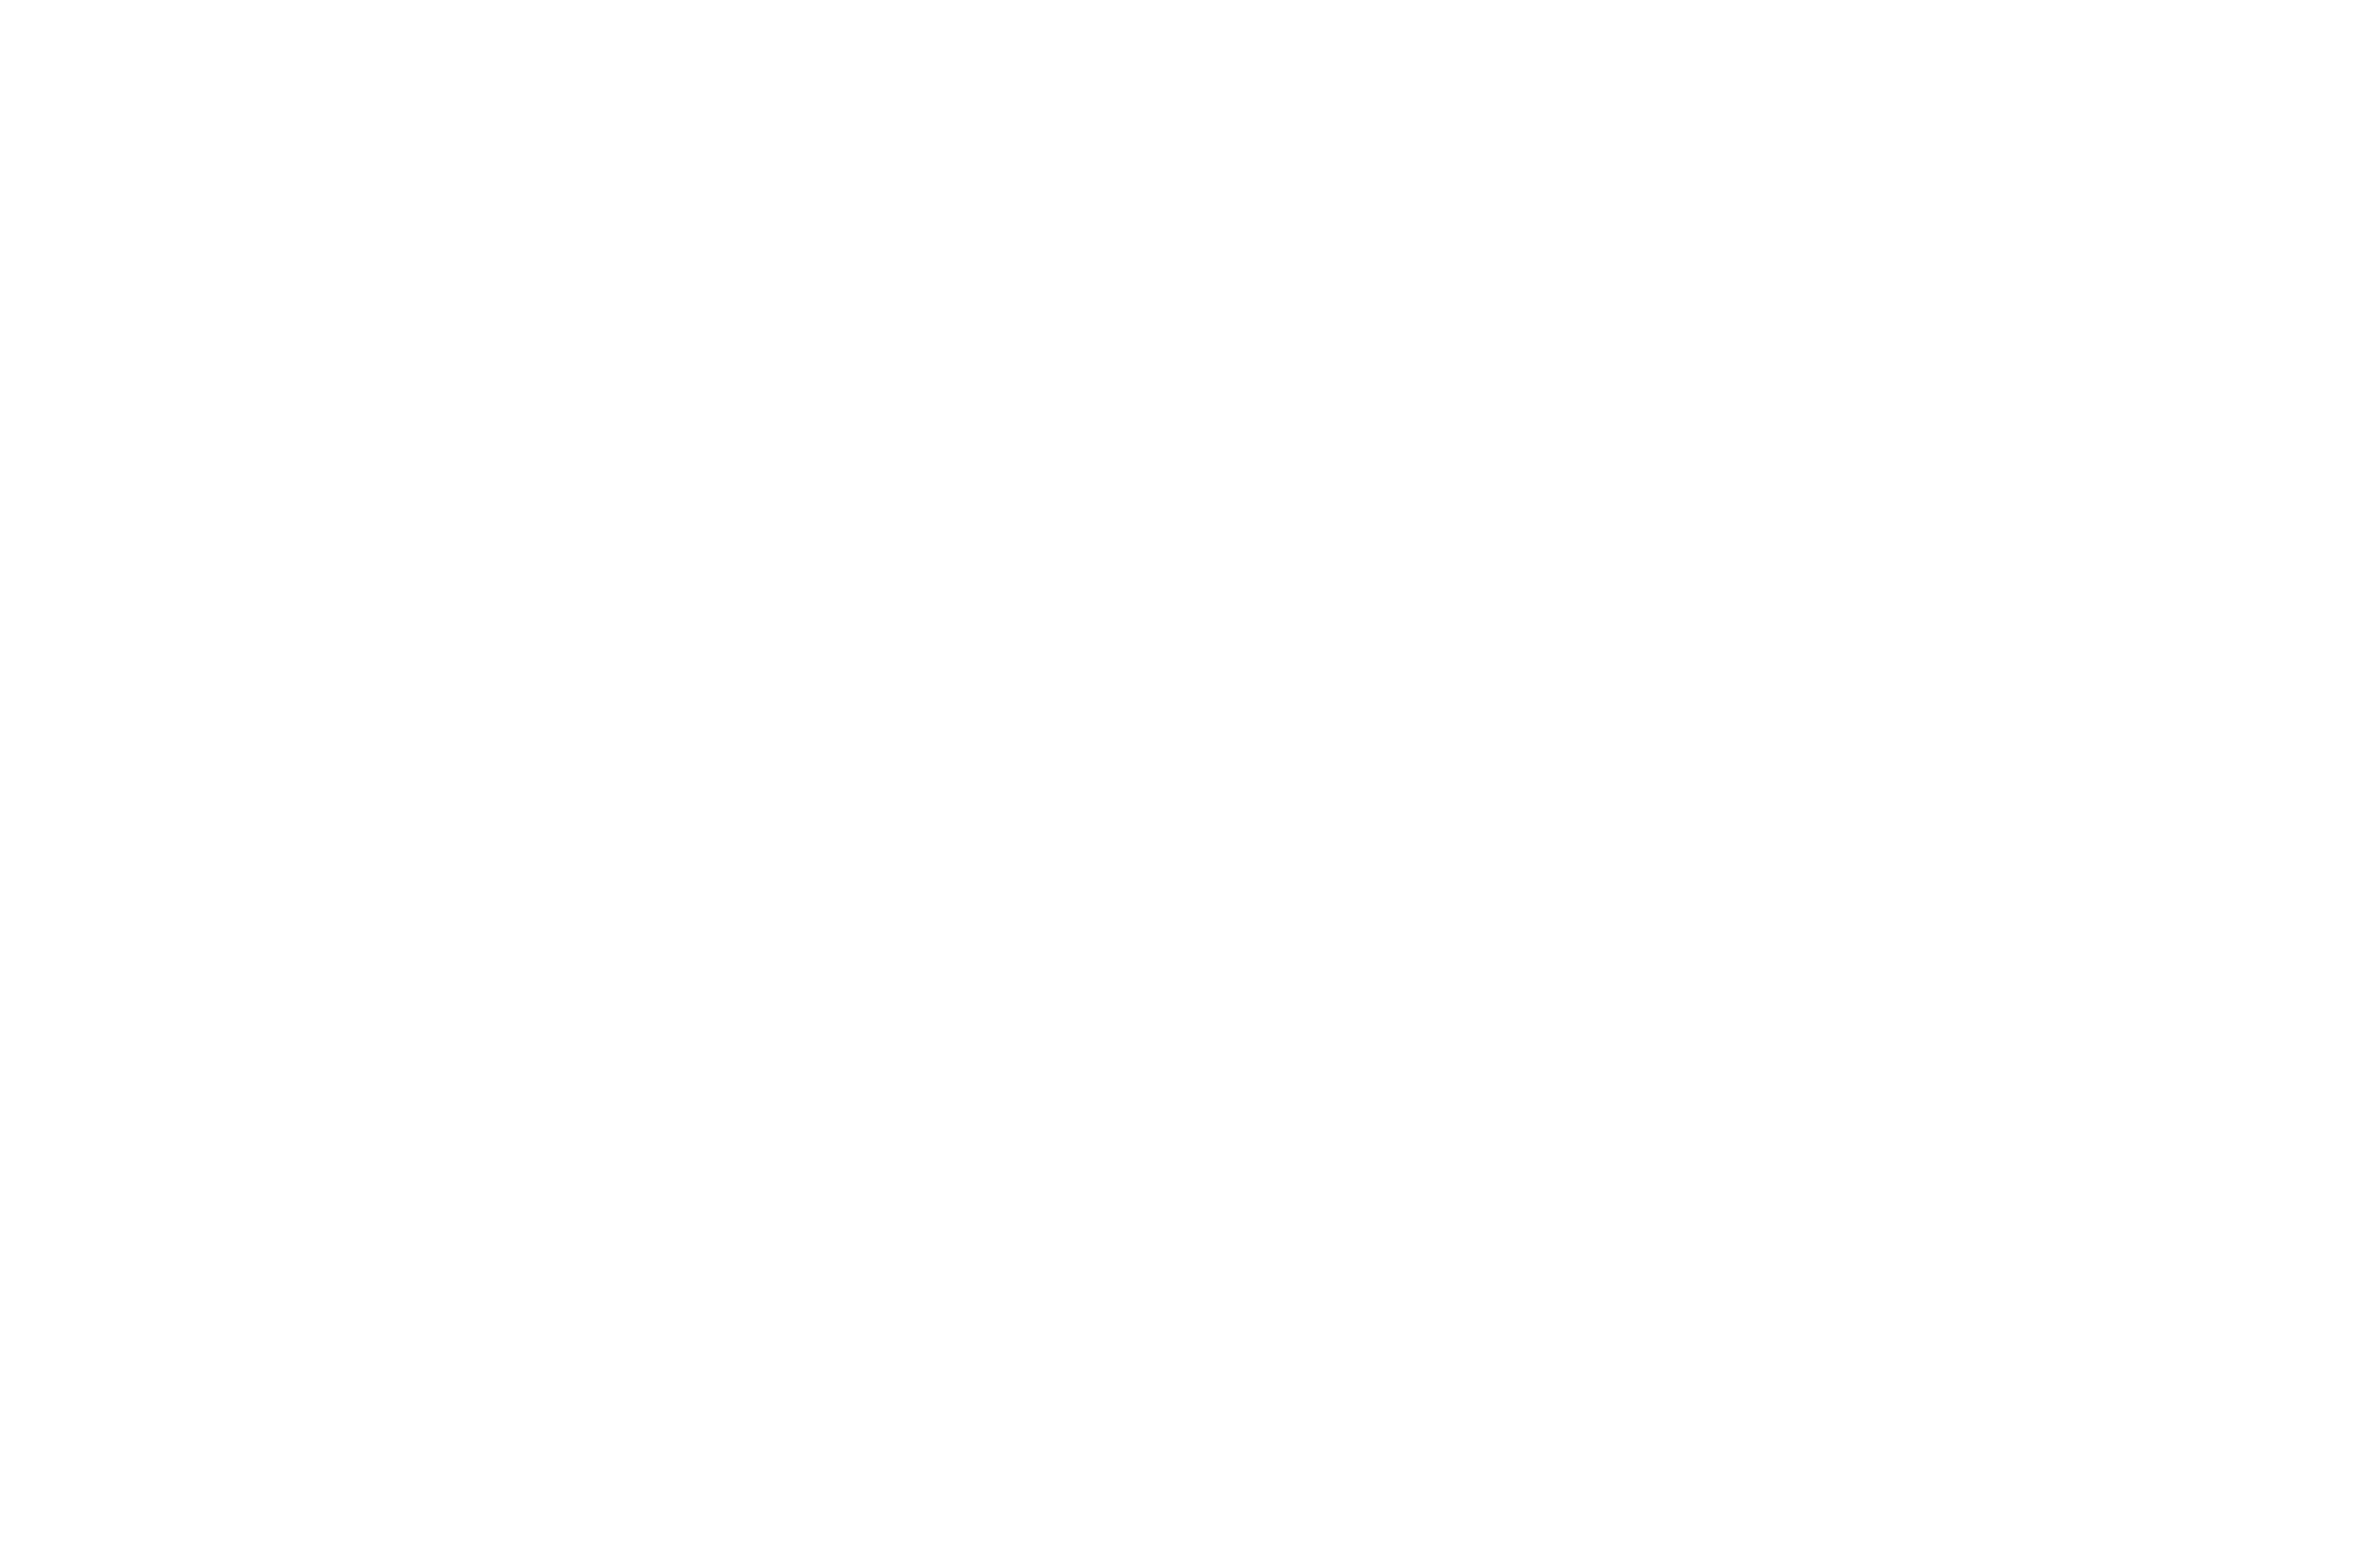 European Cinema Festival Best Producer white